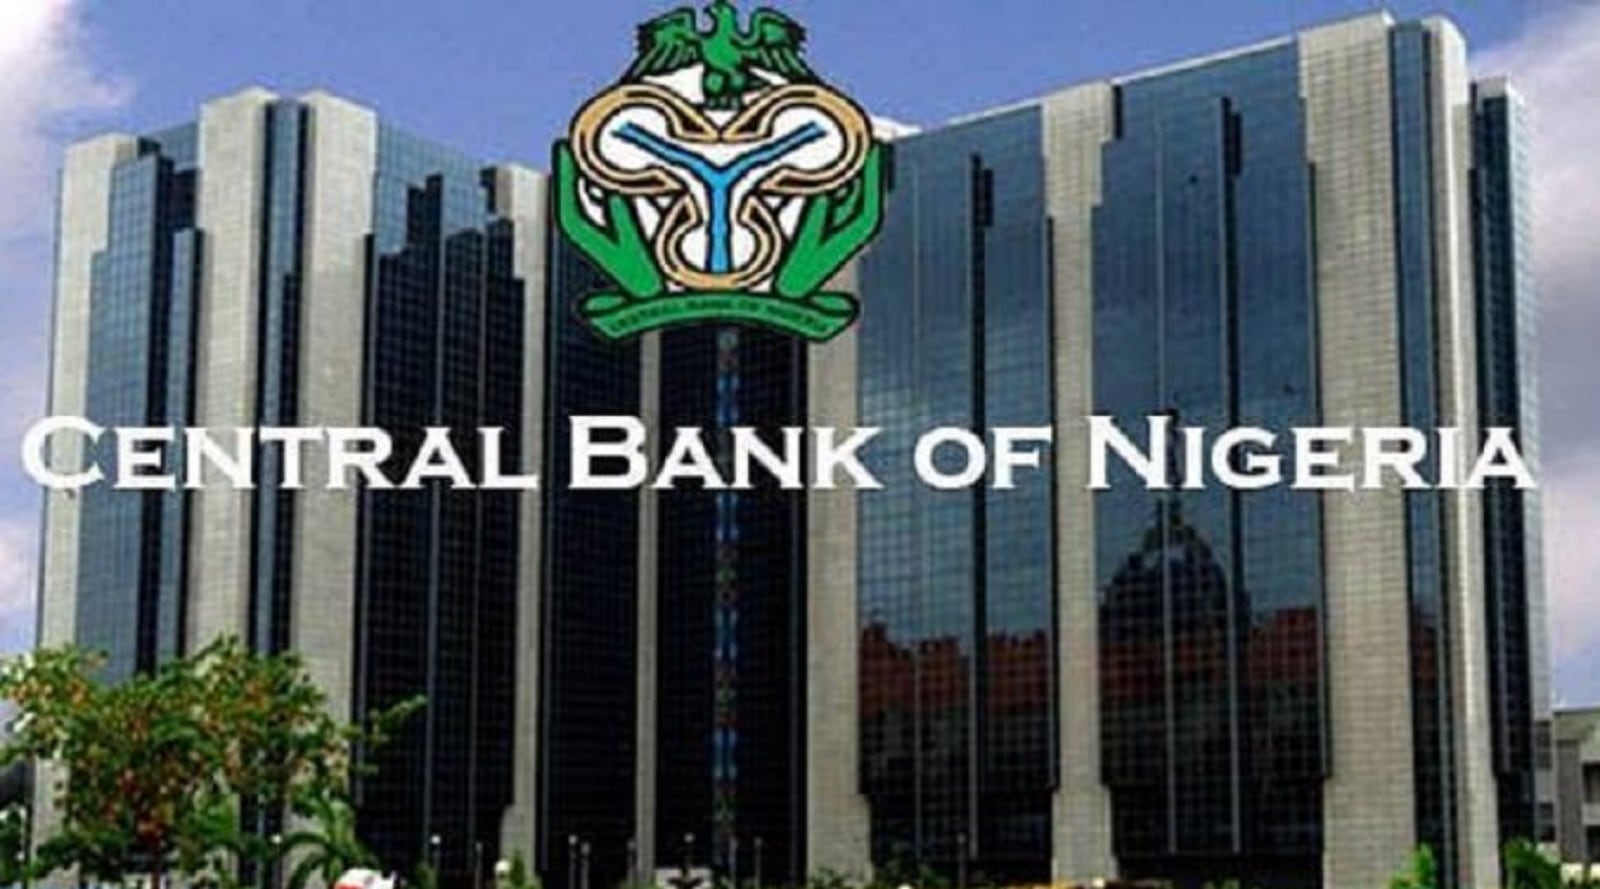  Banque centrale du Nigeria : un audit judiciaire révèle des irrégularités 